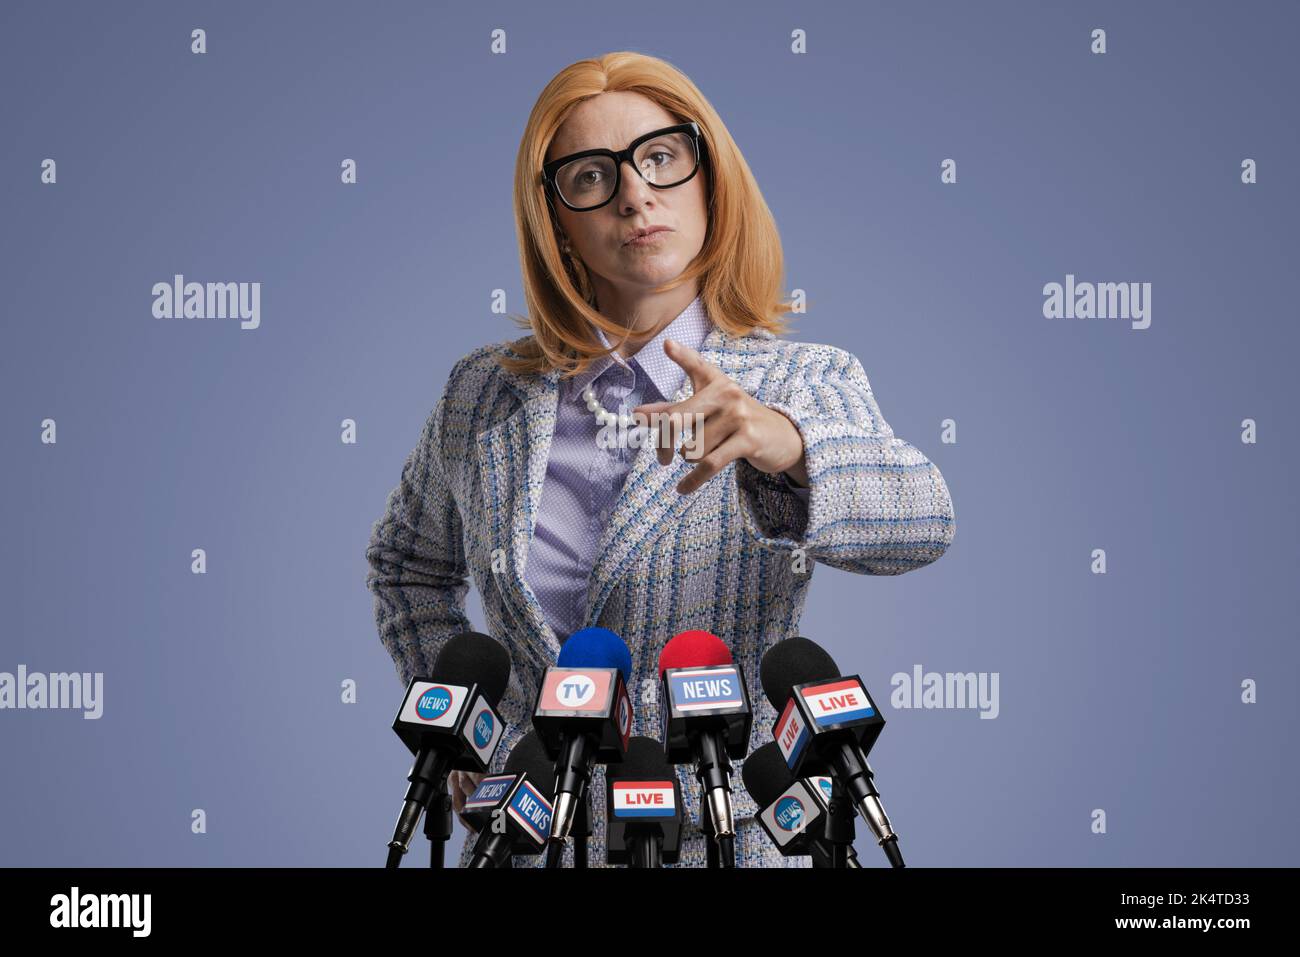 Fidata donna politica che tiene una conferenza stampa, sta puntando alla telecamera Foto Stock